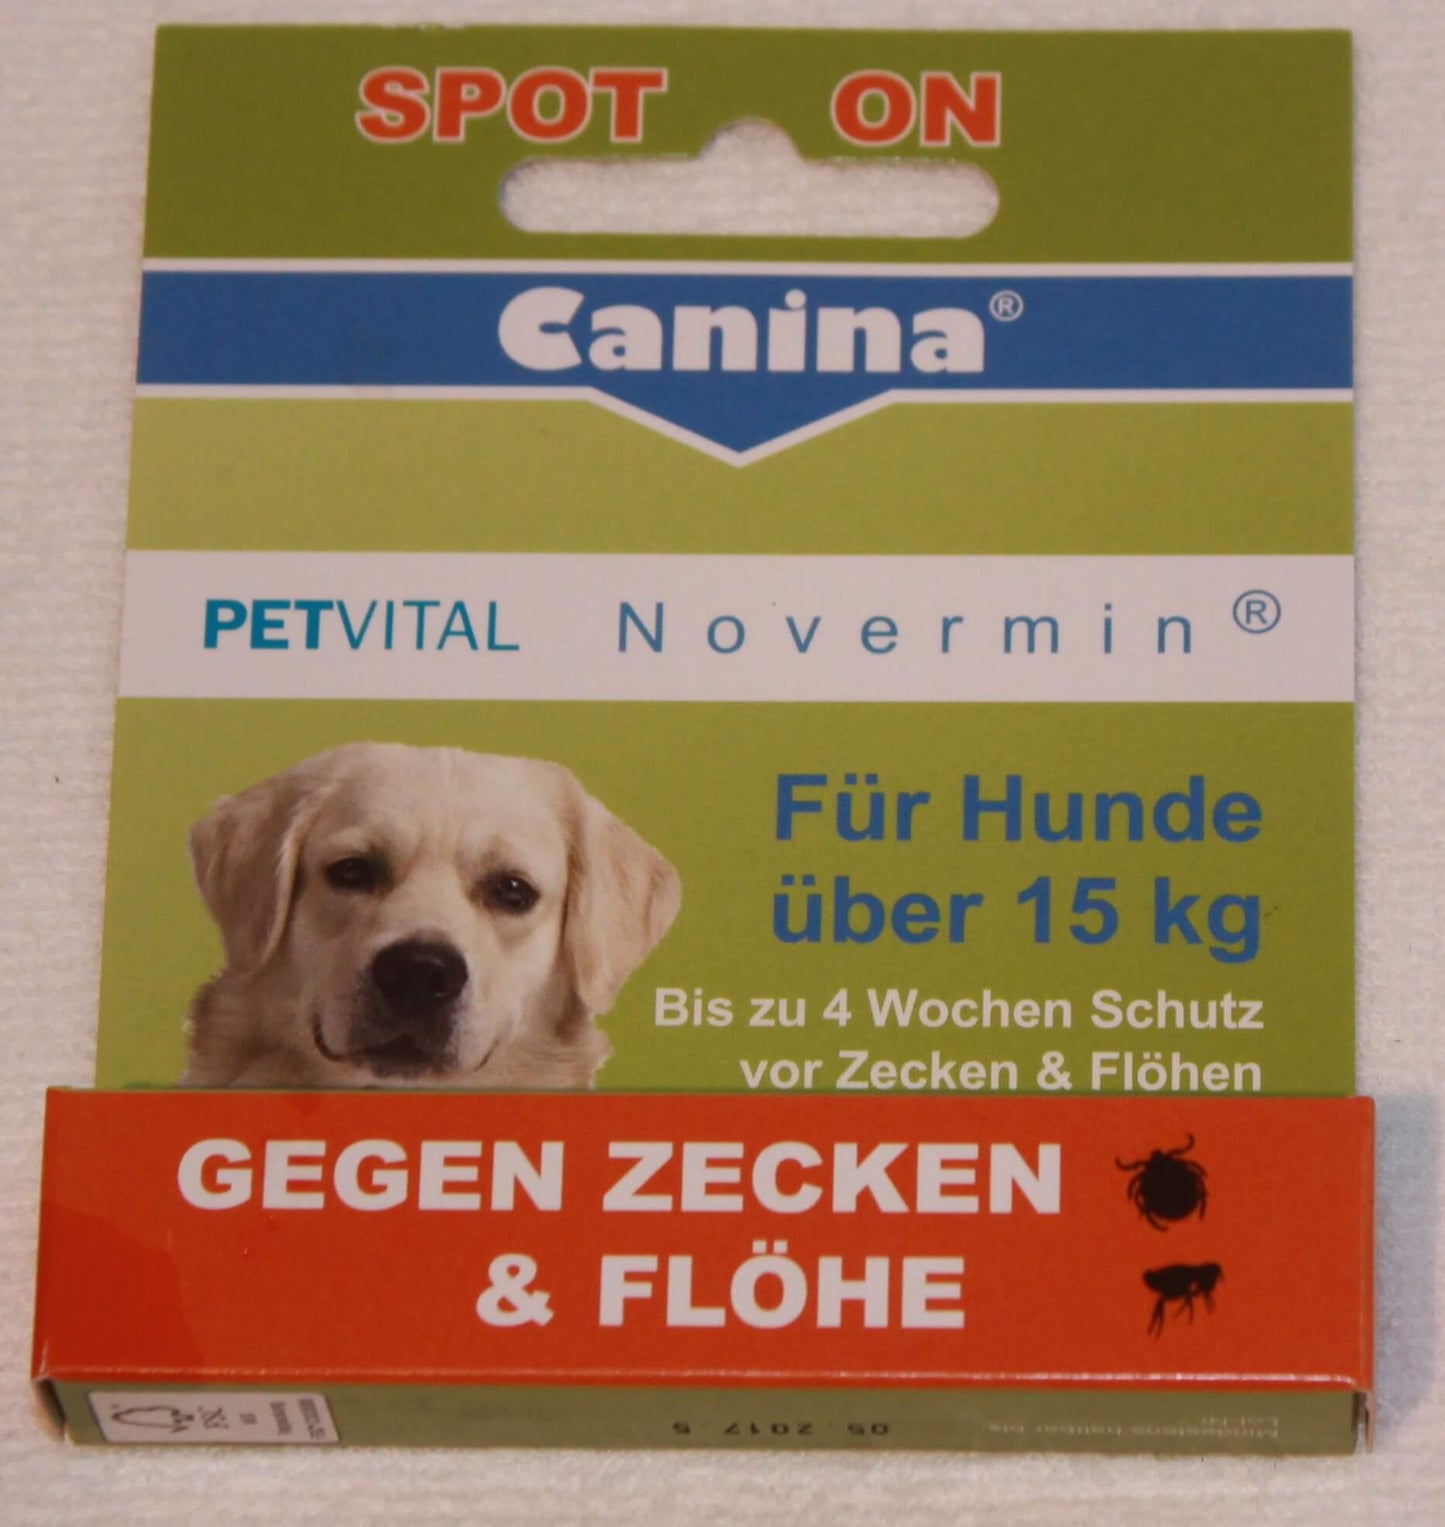 sæt ind Hop ind vedholdende Loppe og Flåt forebyggelse til hund - Hundeplejeprodukter - Køb Her ! –  TheWoofPack.dk